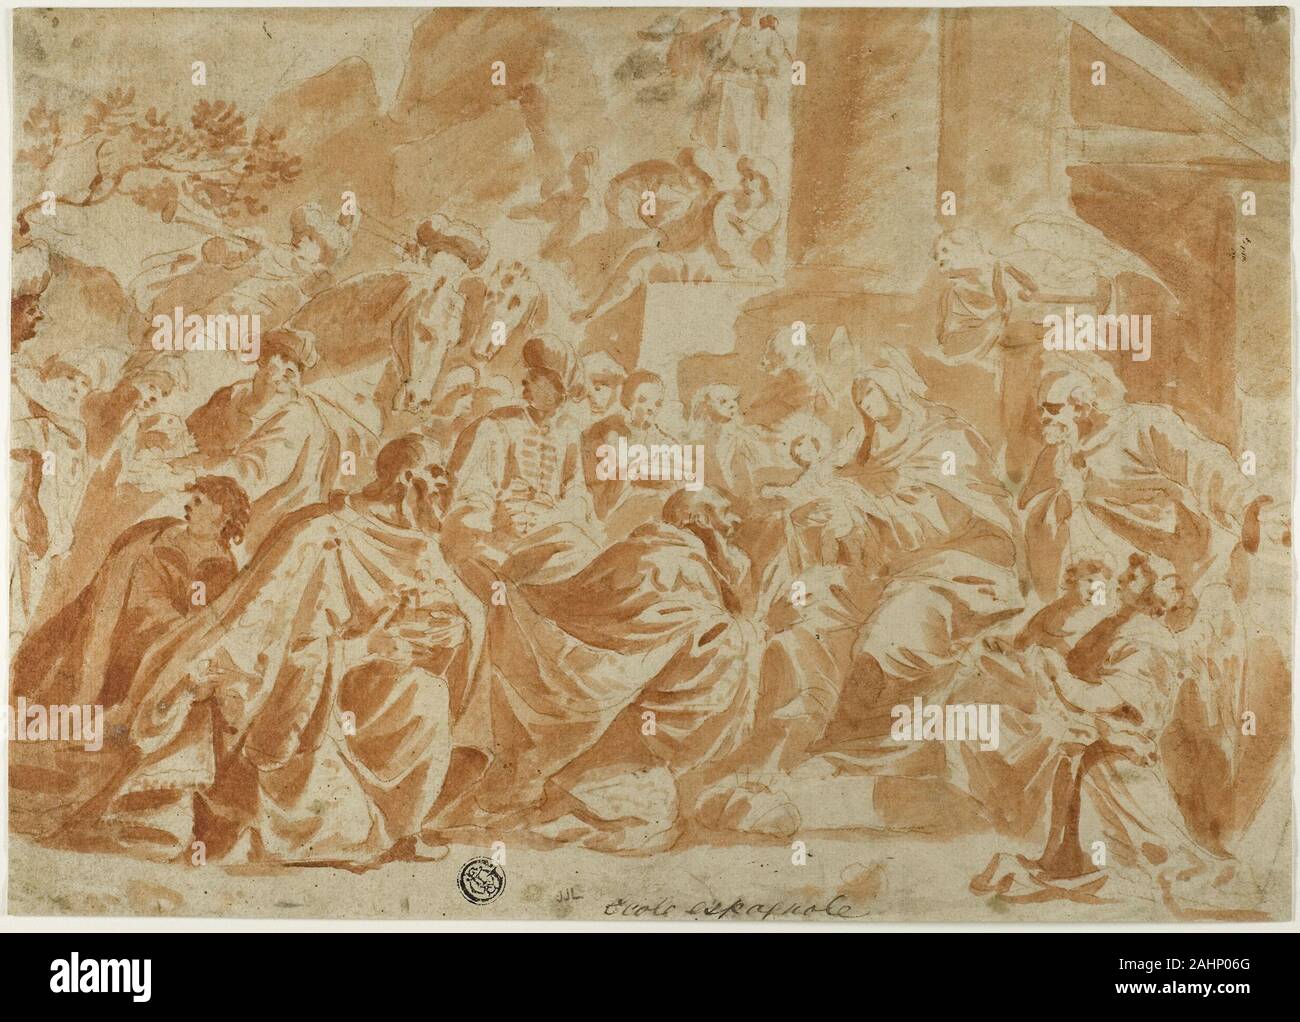 L'École de Peter Paul Rubens. Adoration des Mages. De 1600 à 1699. La Flandre. Craie rouge et la brosse de lavage et de craie rouge, plus de traces de craie noire, sur papier vergé ivoire Banque D'Images